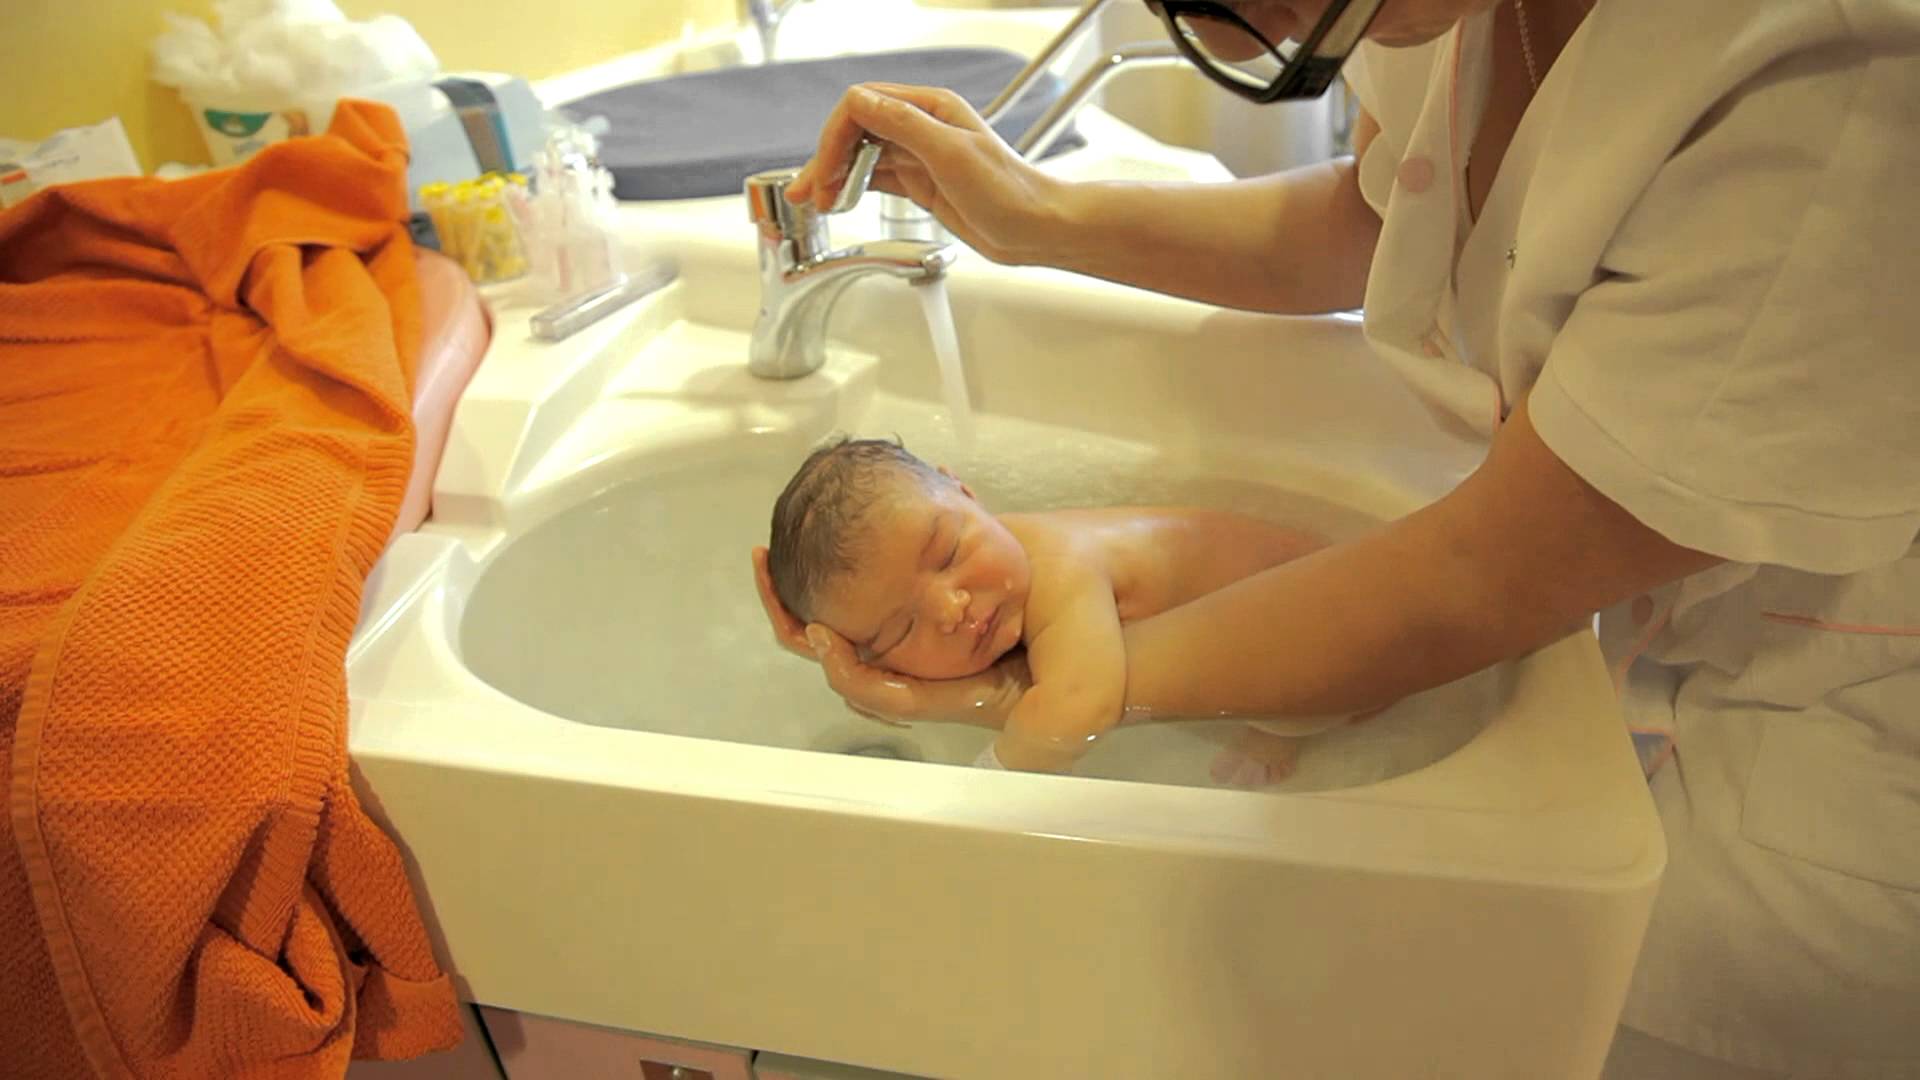 Гигиенический уход за ребенком. Подмывание ребенка в раковине. Раковина для подмывания младенцев. Гигиеническая ванна ребенка. Купание новорожденного ребенка в роддоме.